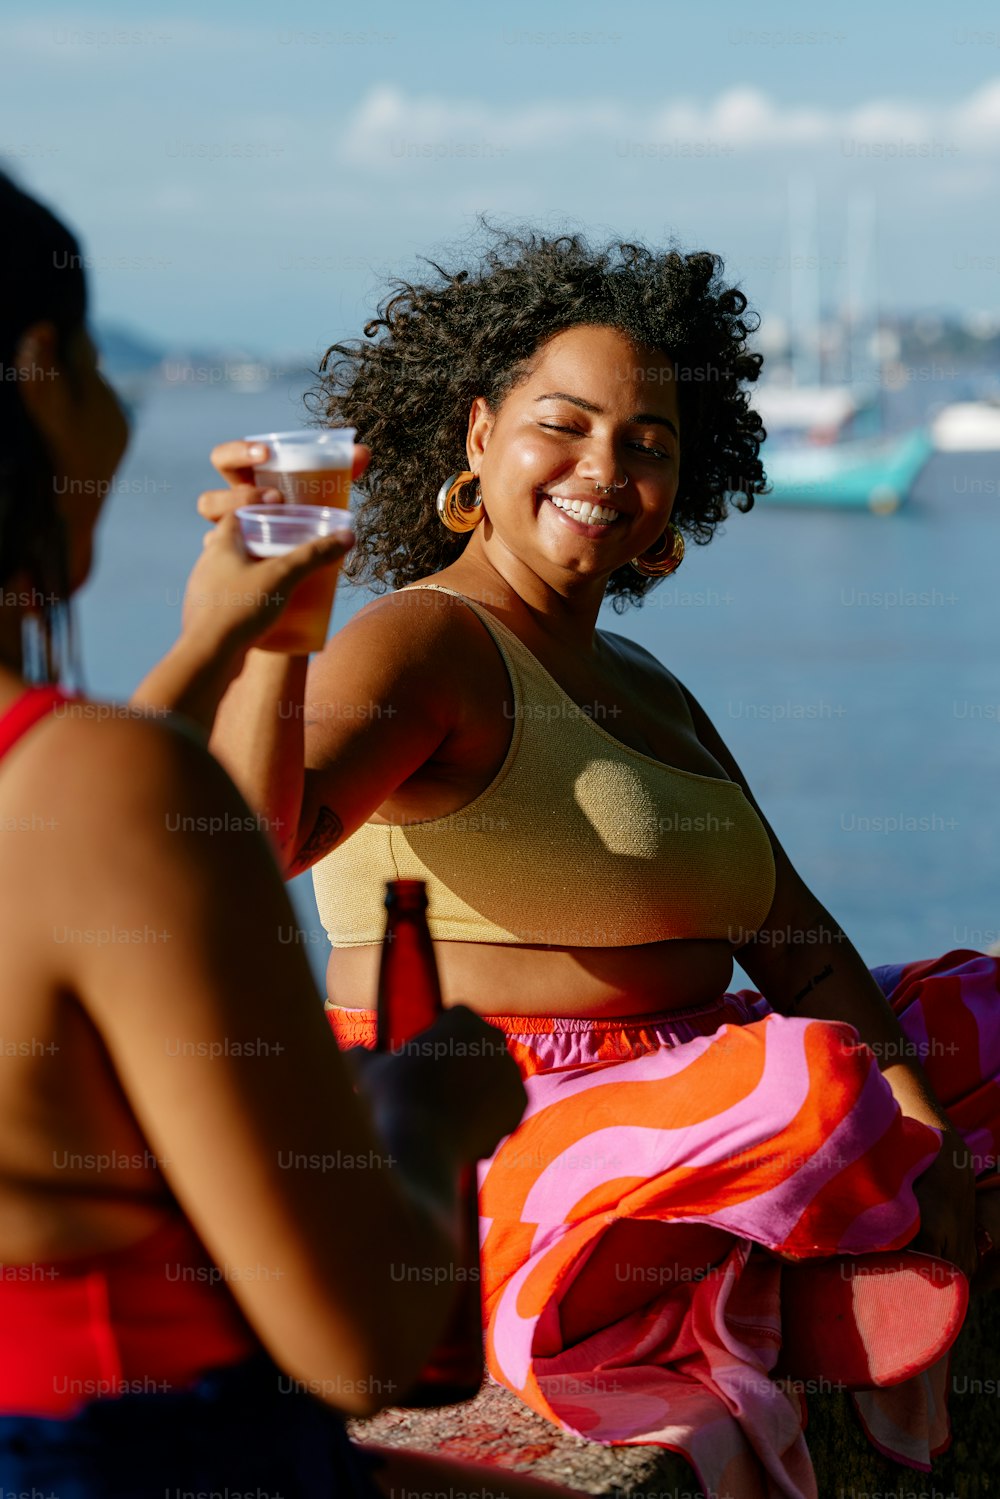 Una mujer sentada en un banco sosteniendo una copa de vino